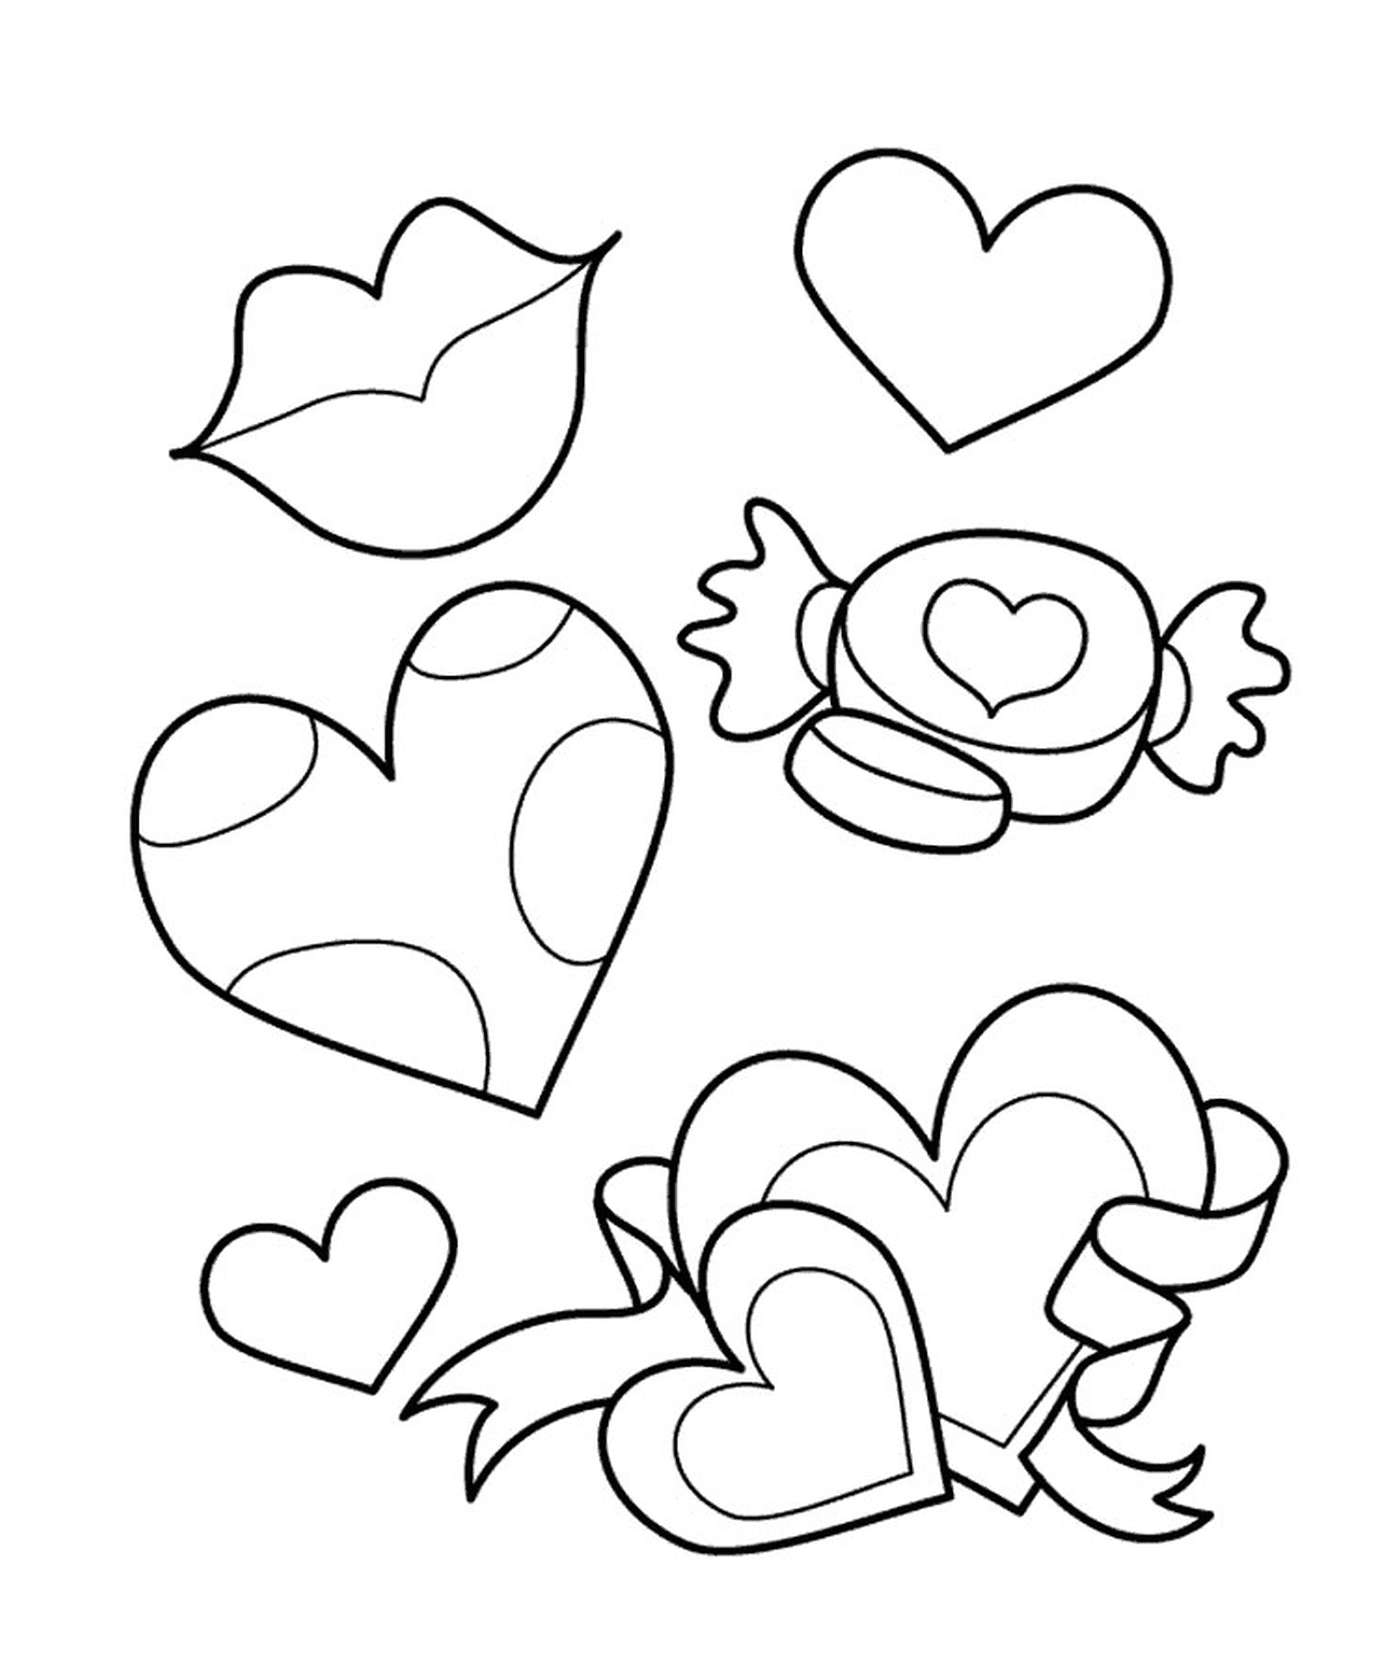  Una variedad de formas y tamaños de corazones 